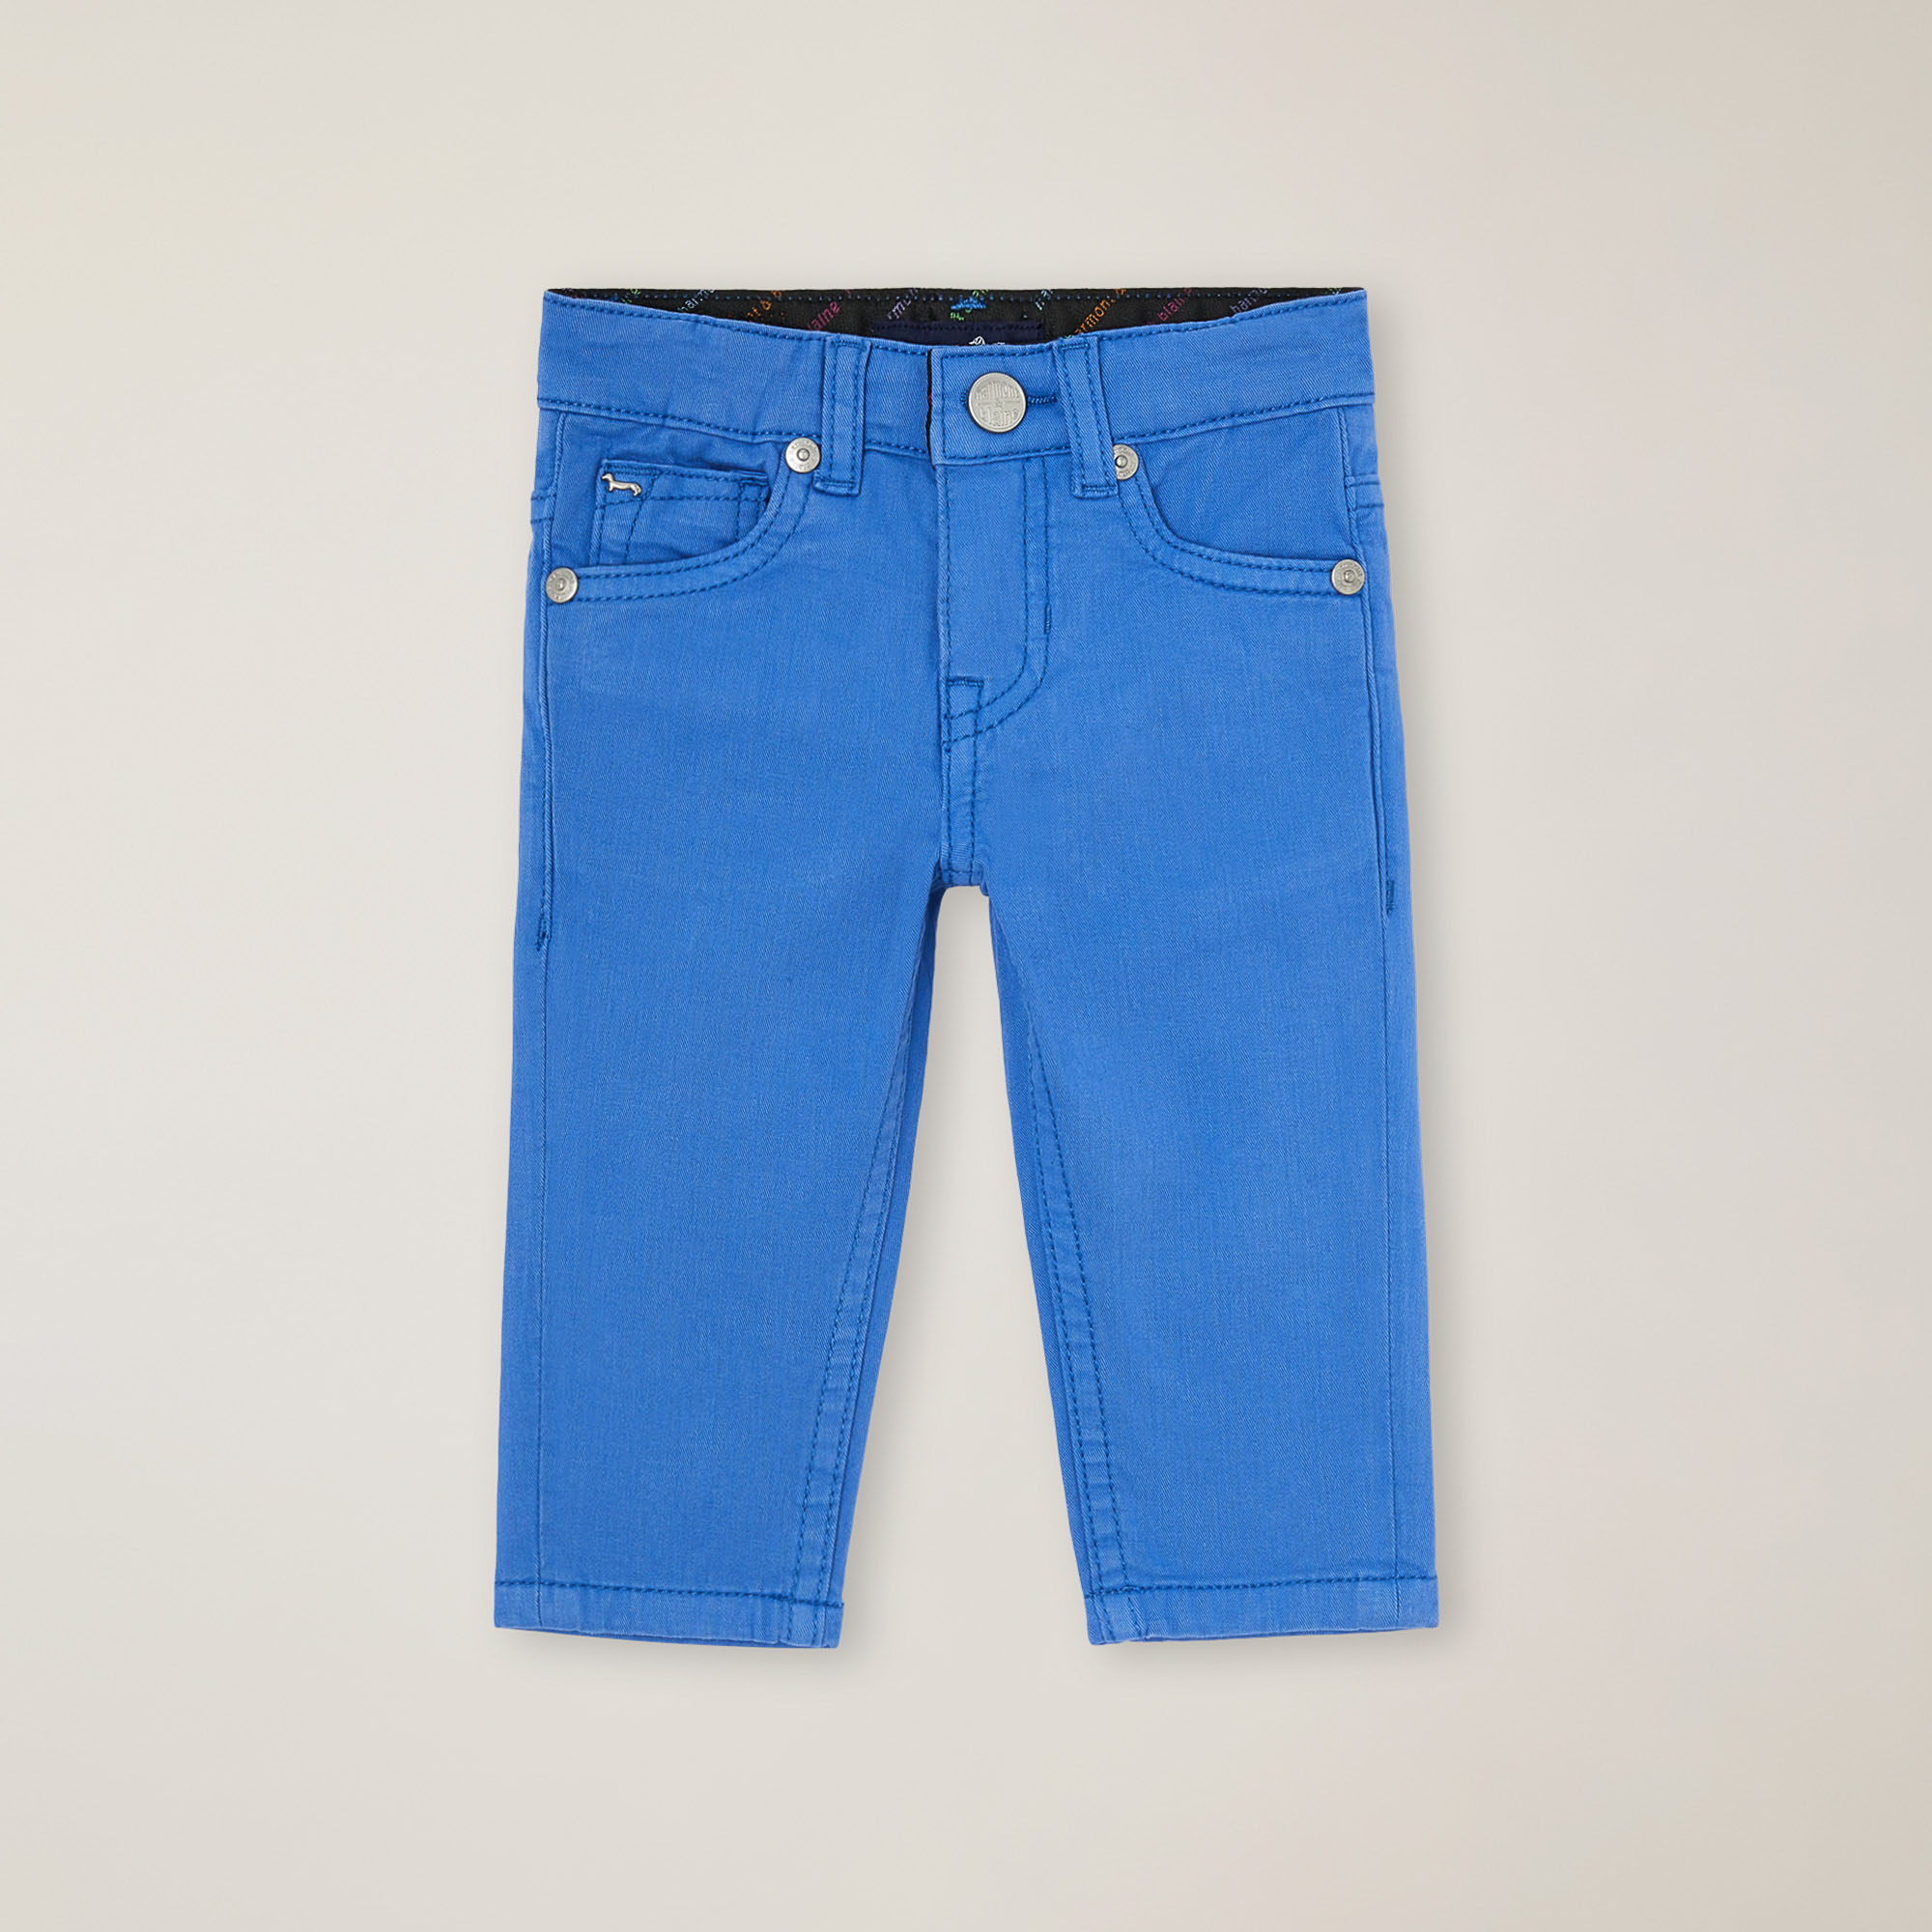 Pantalón de cinco bolsillos con bordado trasero, Azulado, large